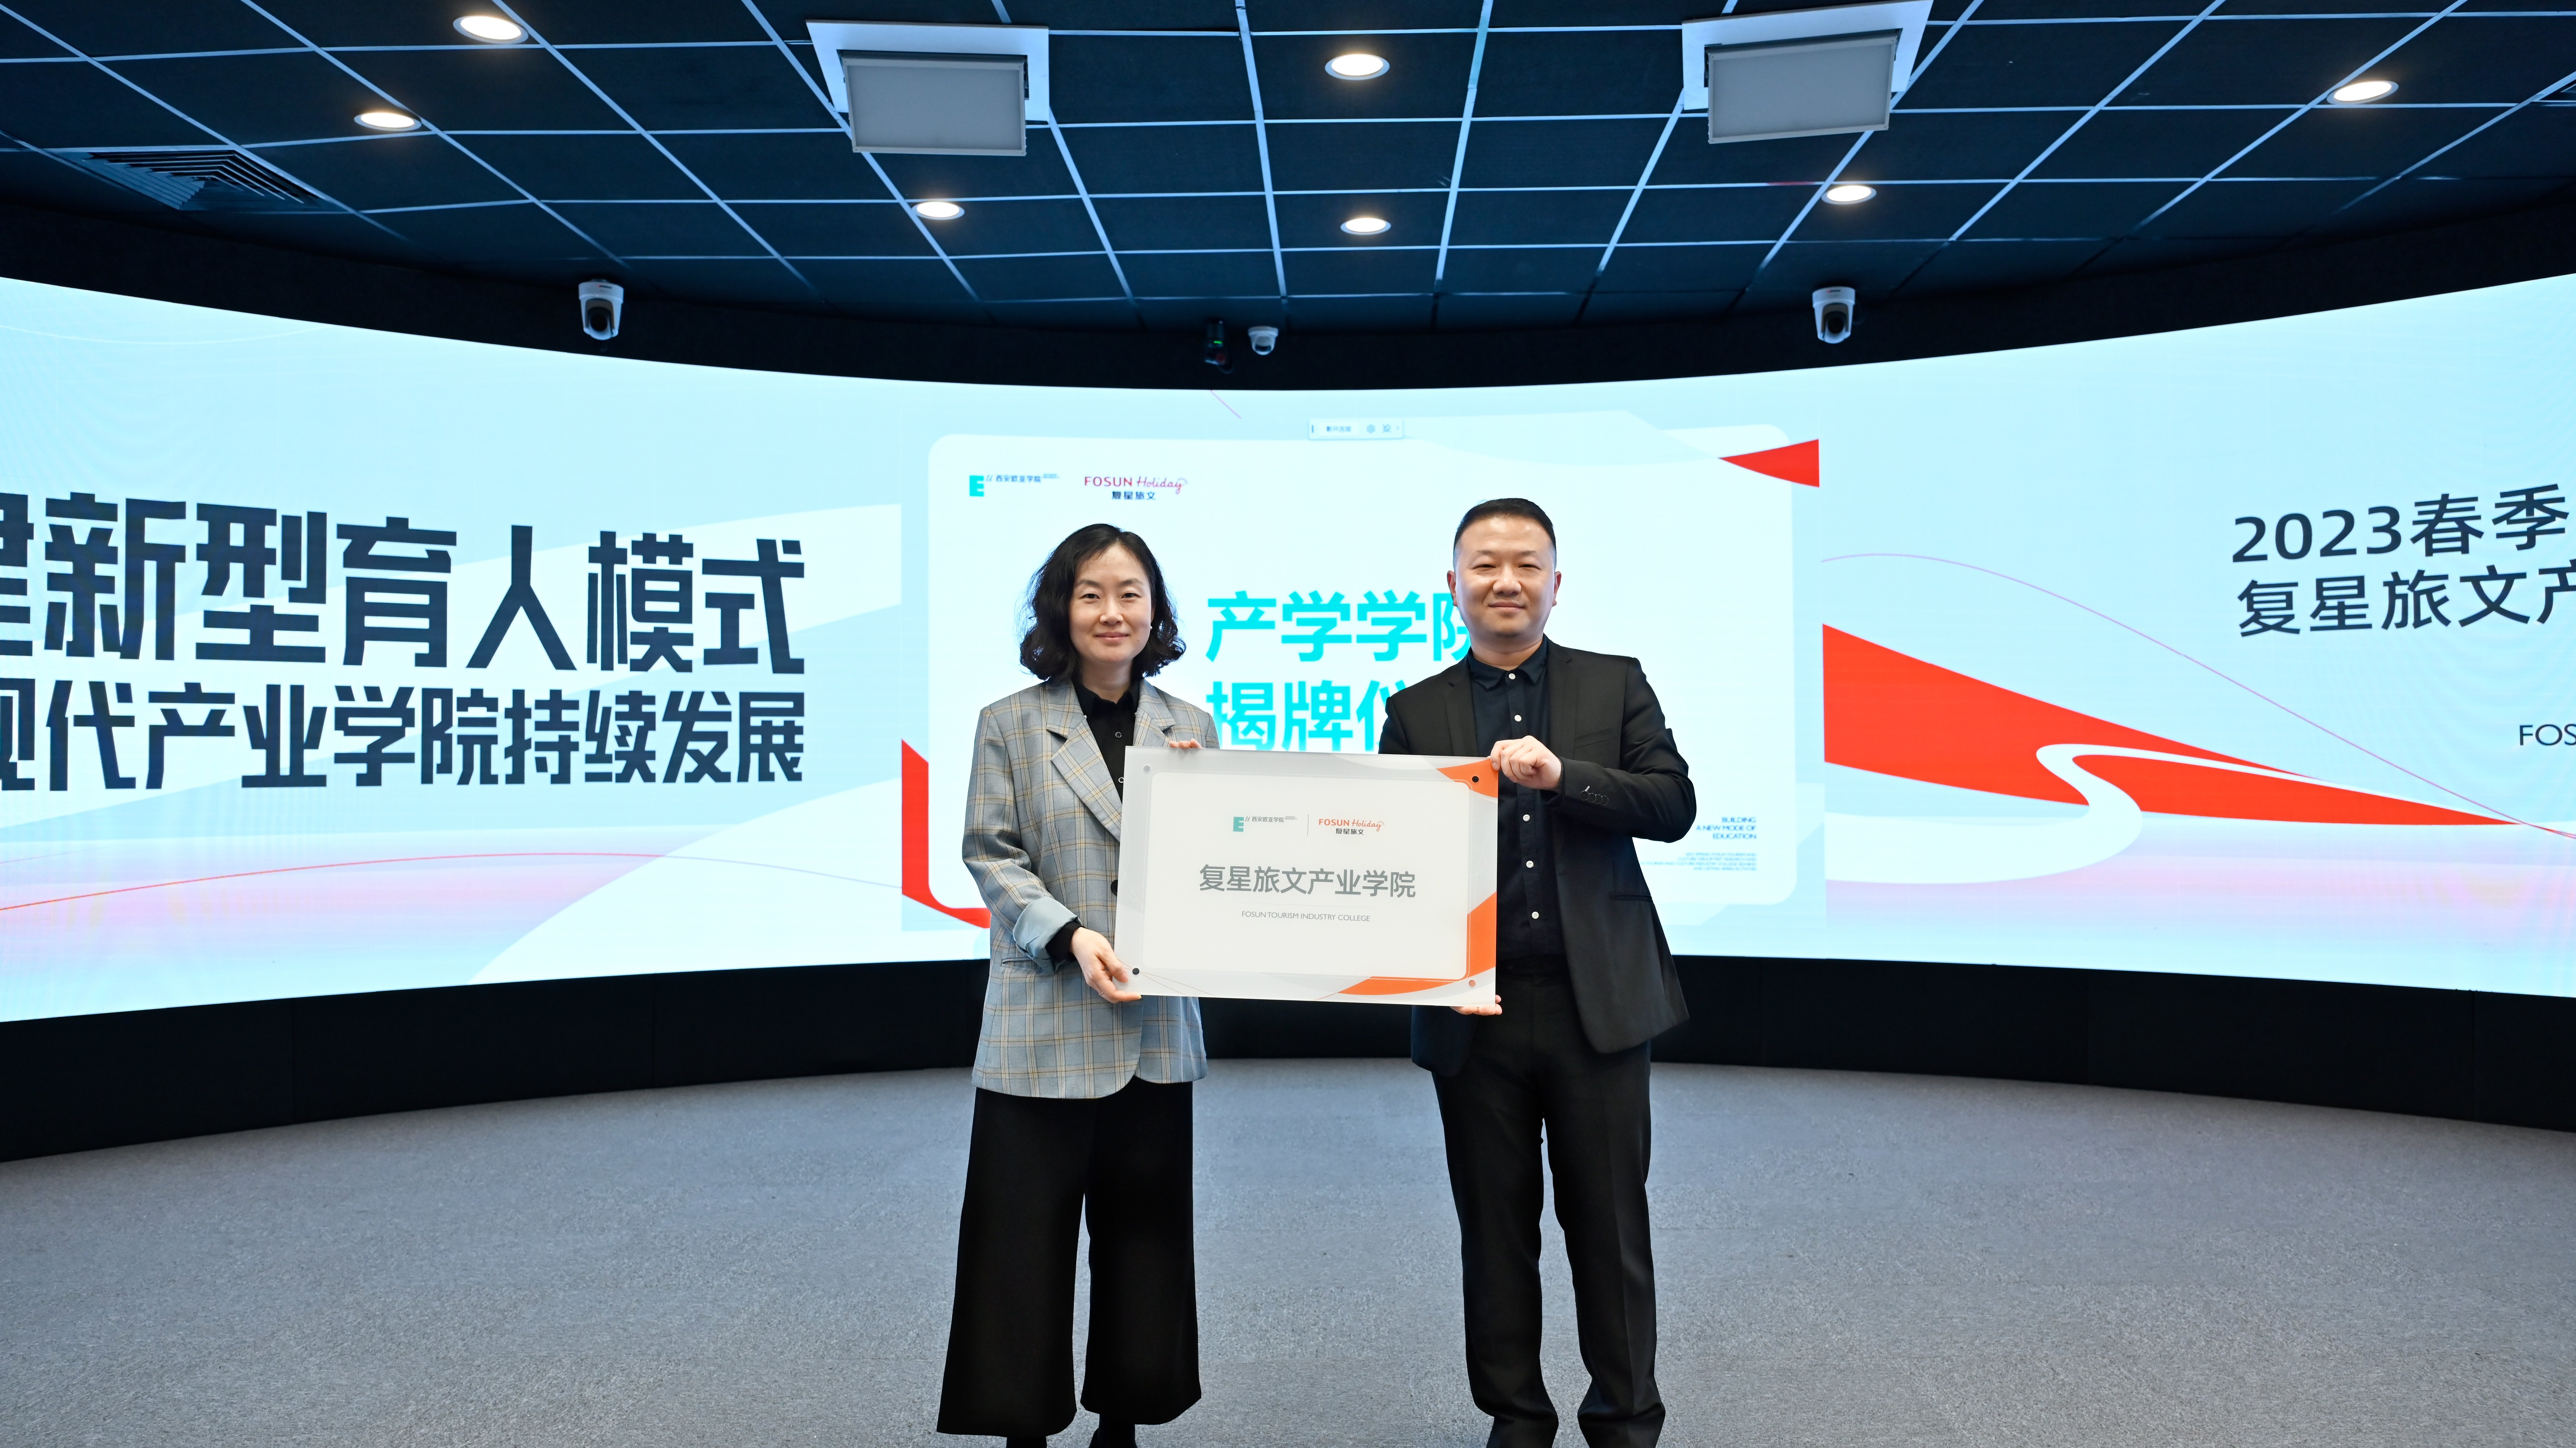 陈哲与企业代表共同为产业学院揭牌西安欧亚学院还与复星旅文集团进行